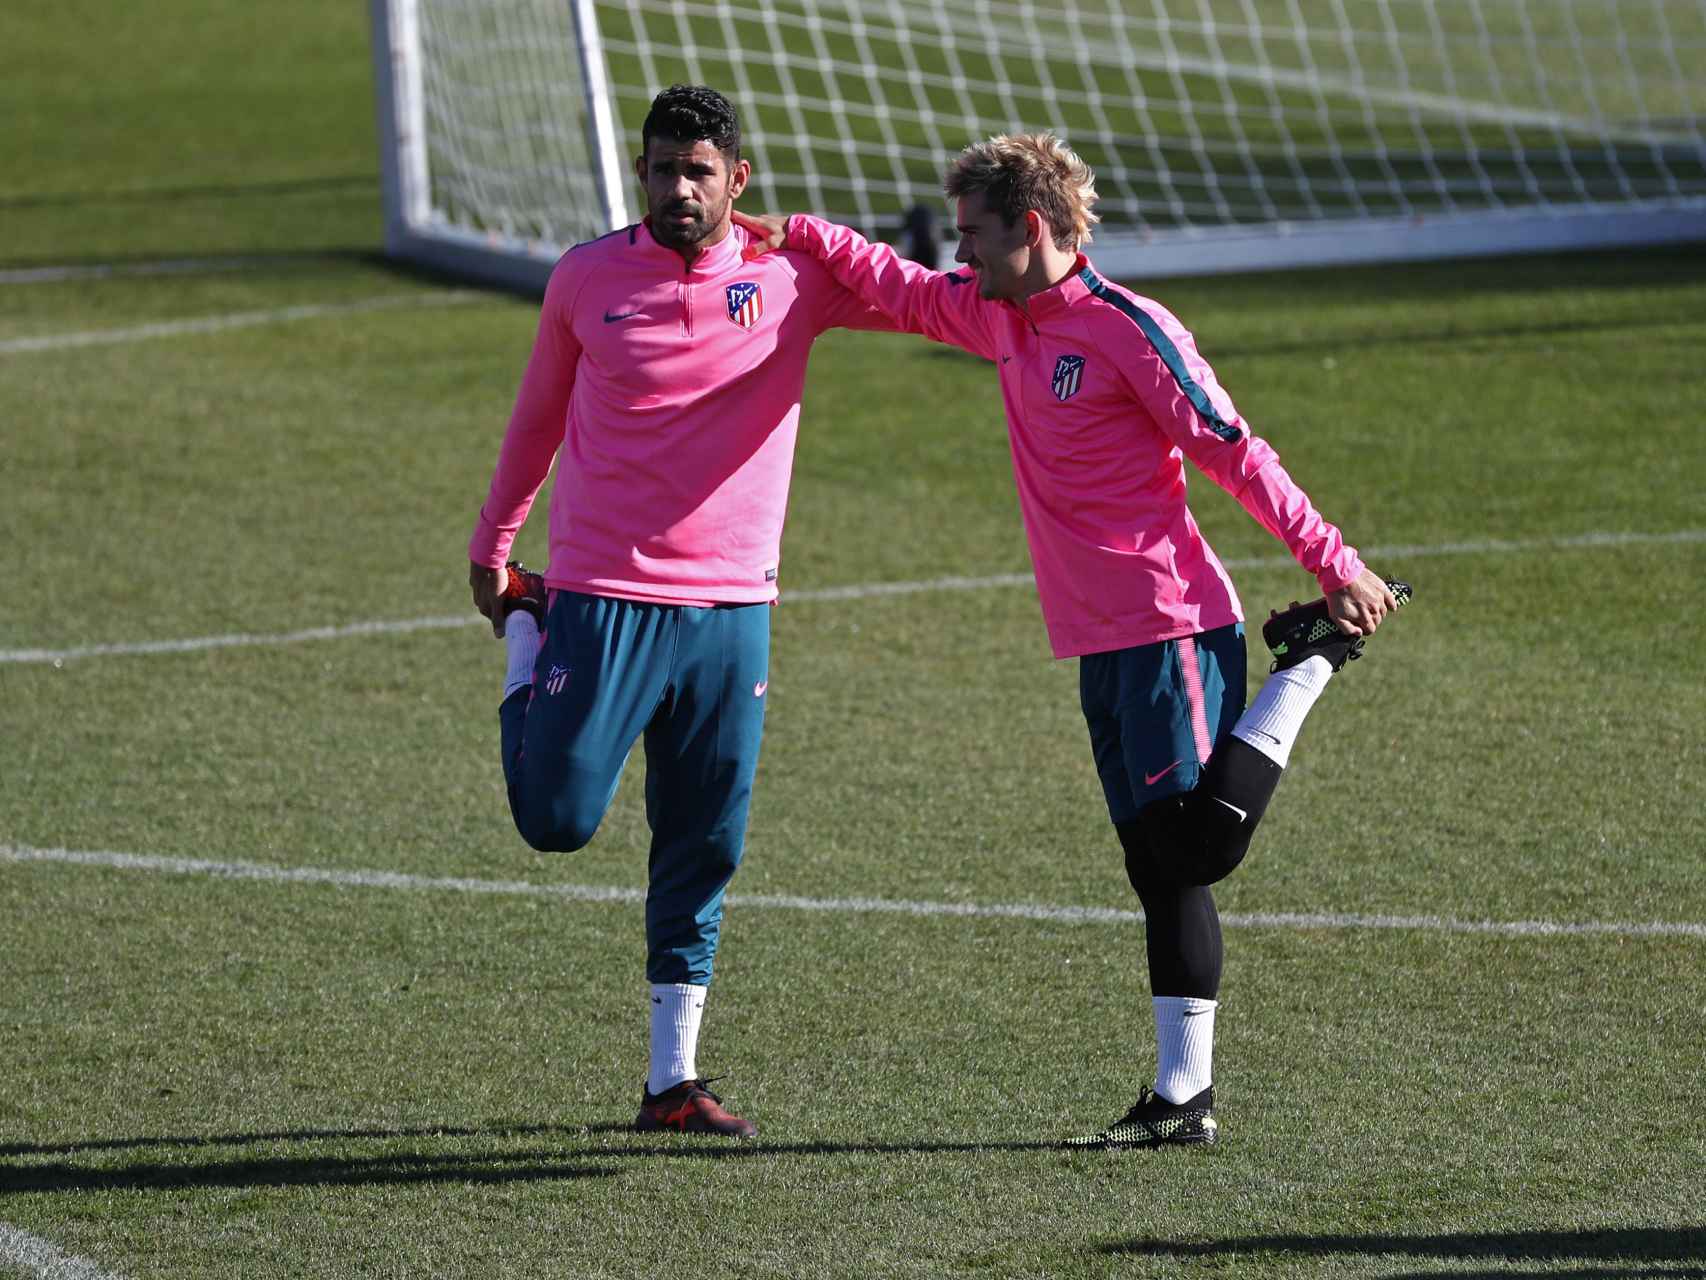 Diego Costa y Griezmann durante el entrenamiento.